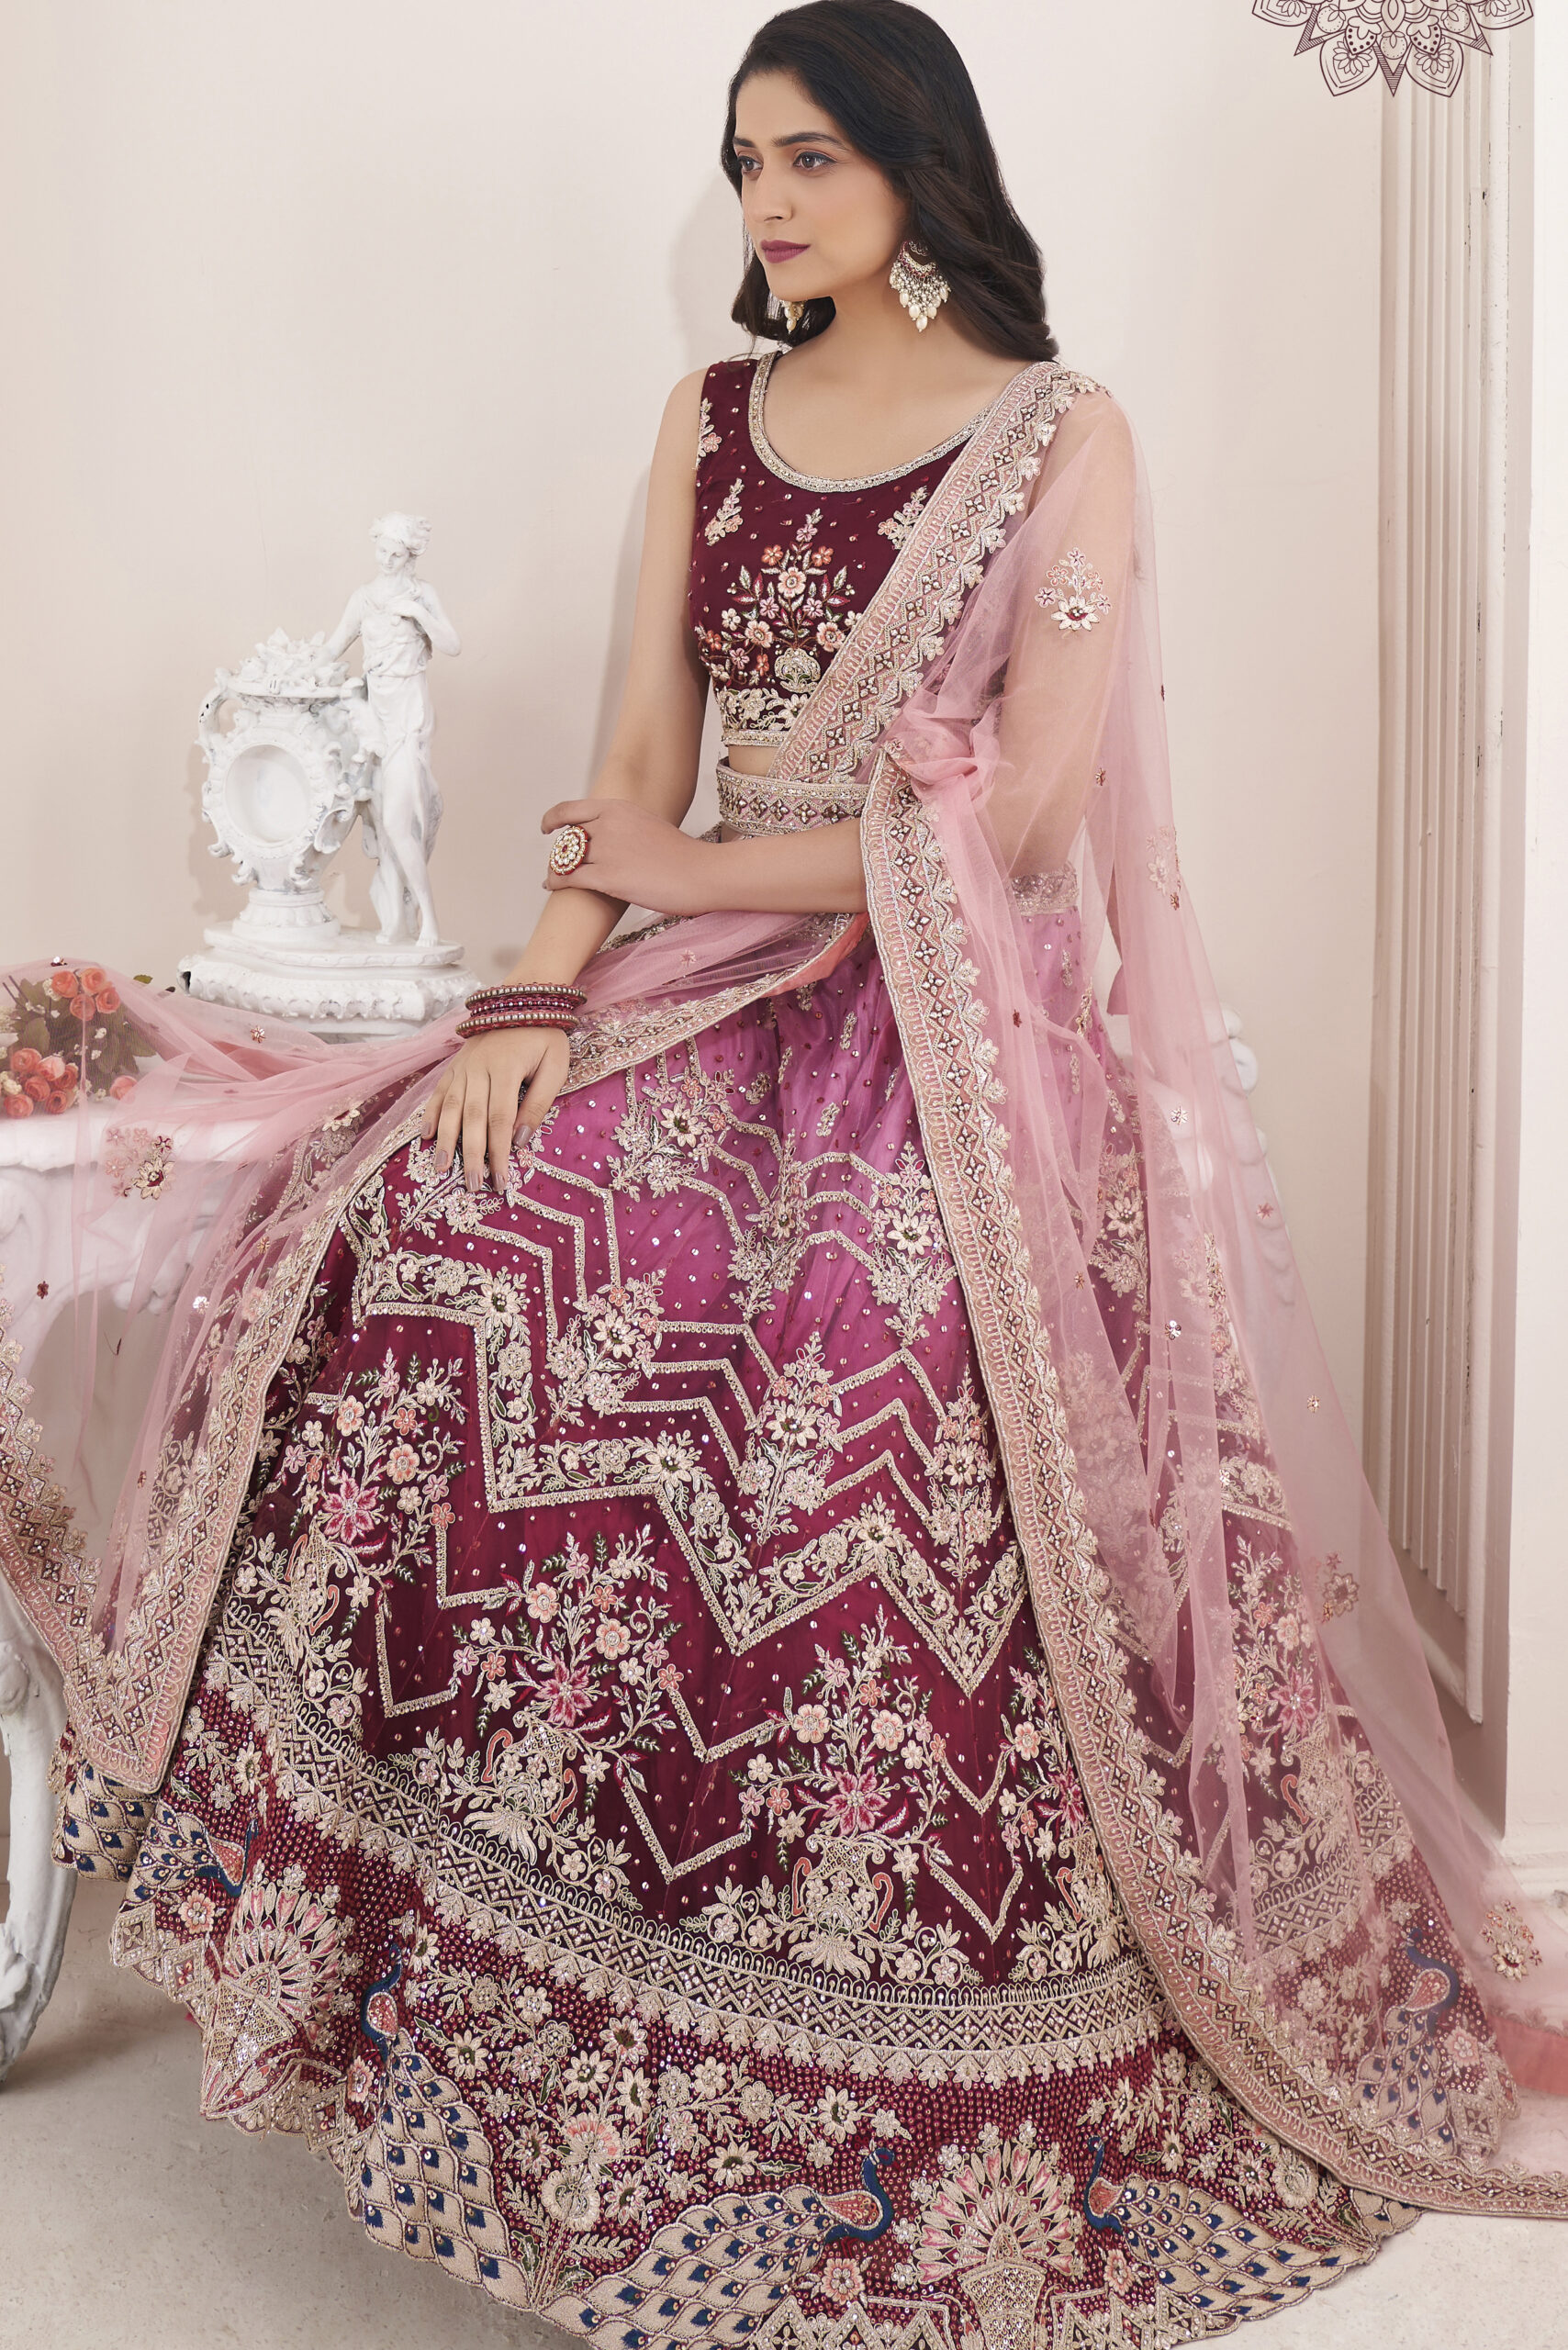 Bridal Wedding Lehenga Online - Buy Indian Bridal Lehenga Choli – Page 3 –  Suvidha Fashion